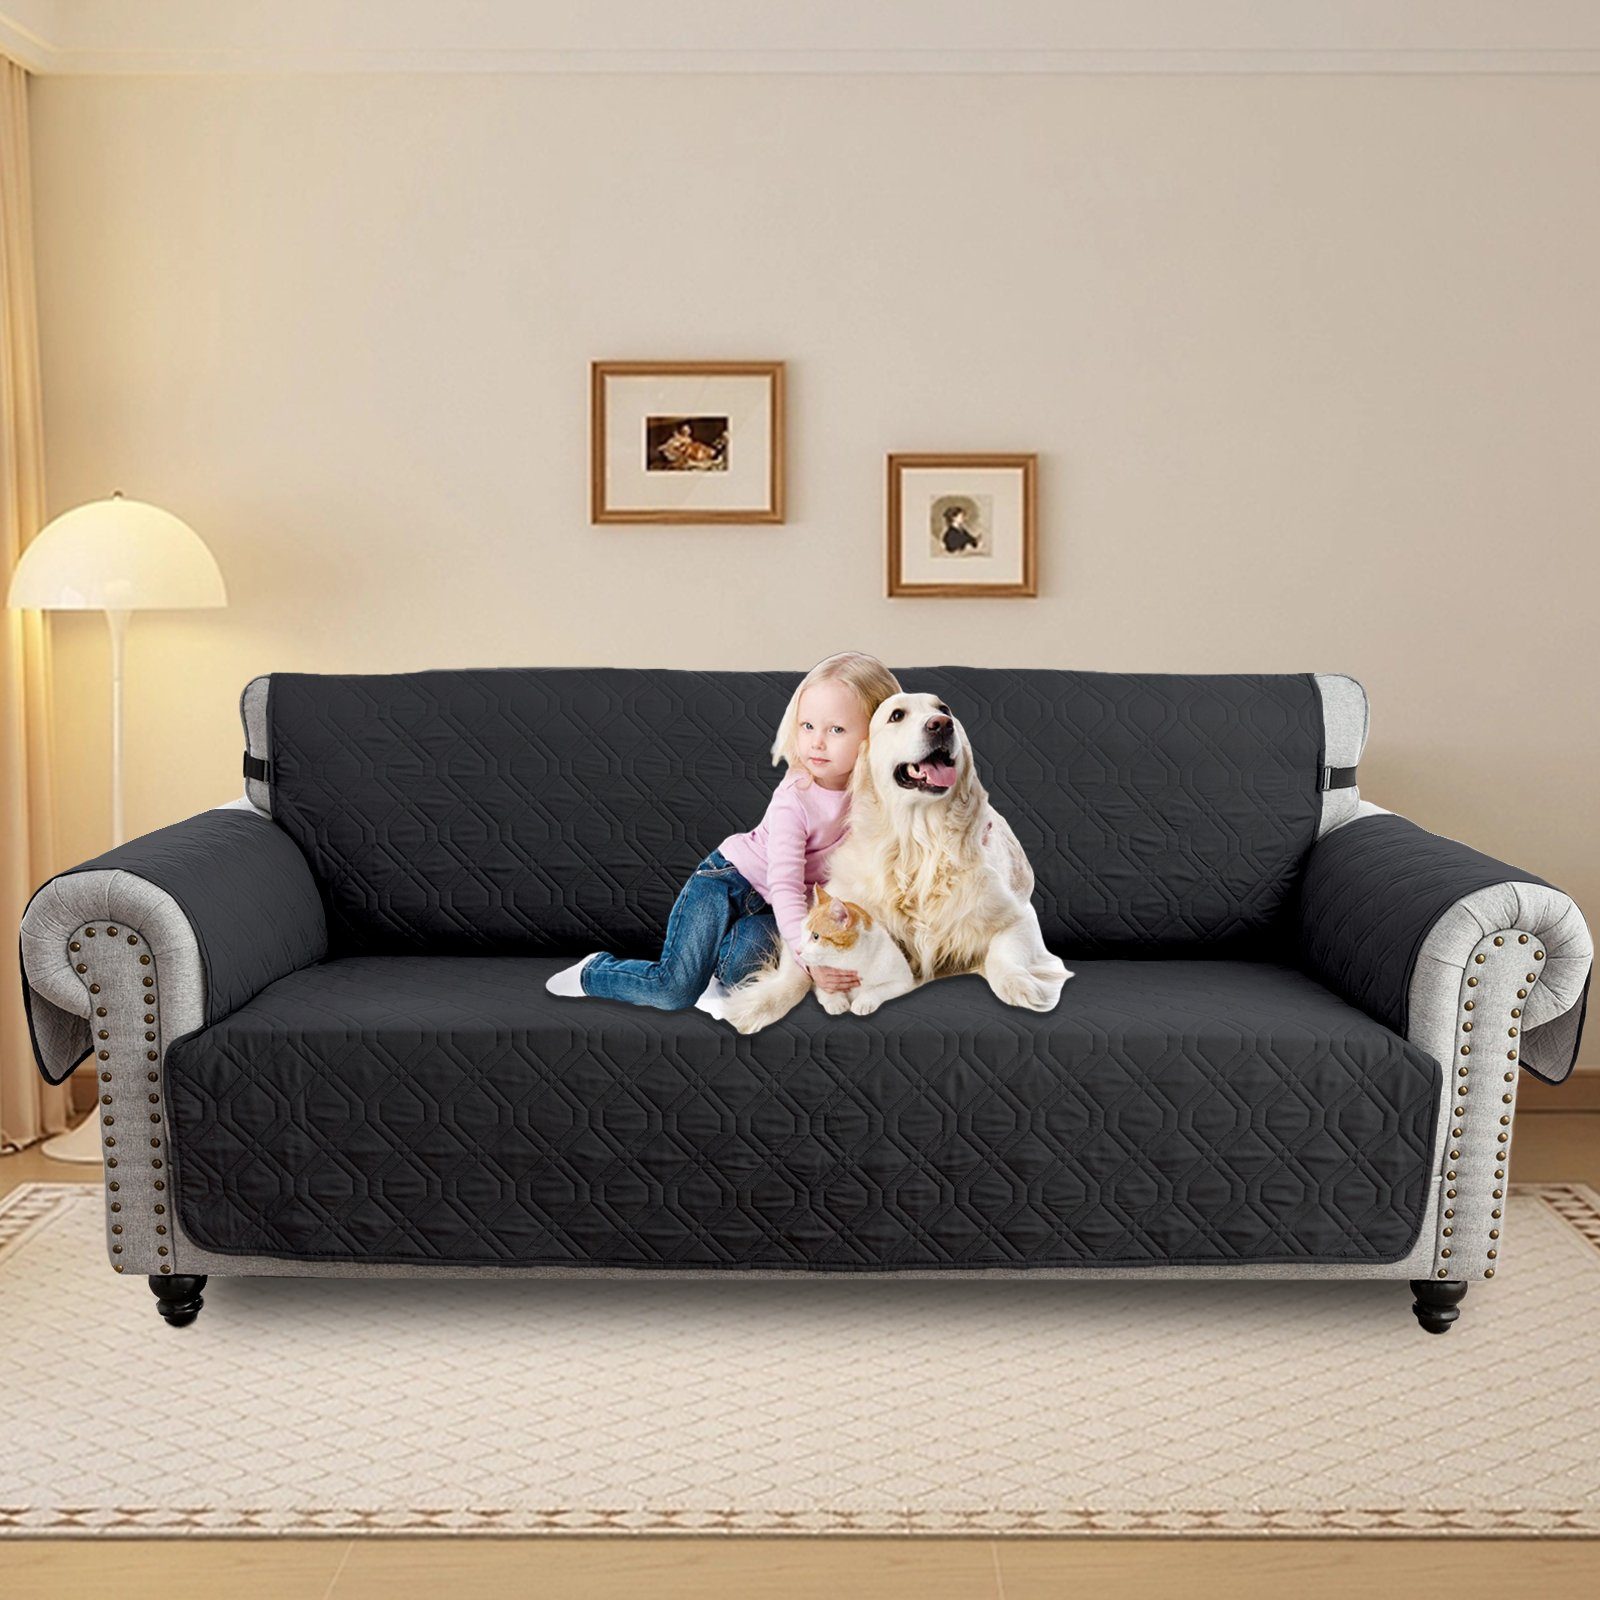 Sofabezug Wasserdicht Gesteppter Haustier Hunde Couch Anti-Rutsch Schutz 1-3Sitz, Sunicol, Sesselschoner Sesselbezug Sofa Überwurf Armlehnenauflage Schwarz | Sofahussen